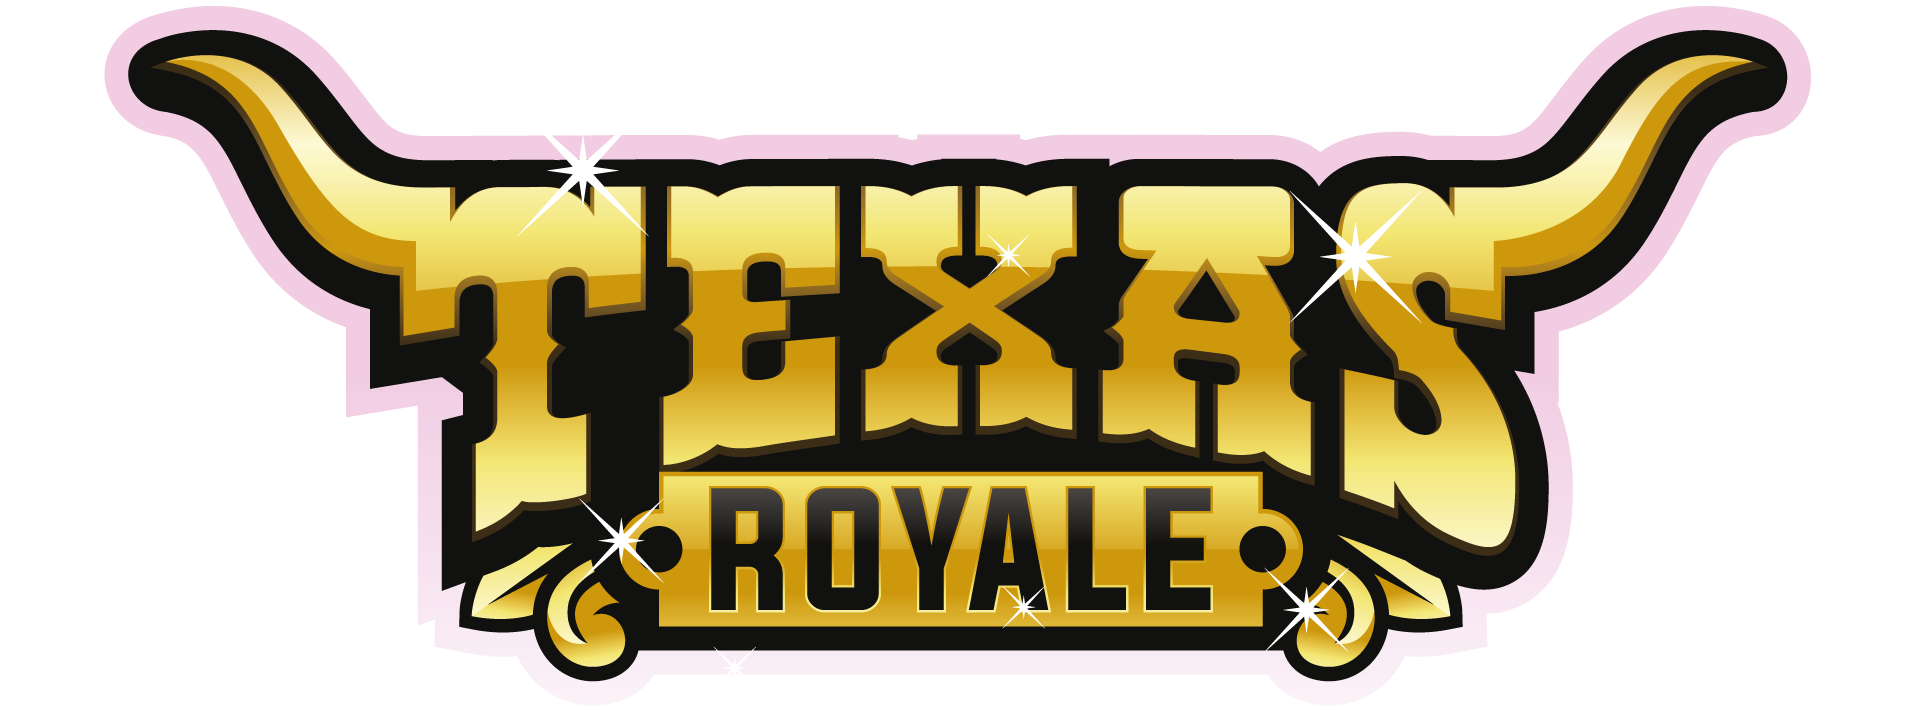 Texas Royale Games Logo